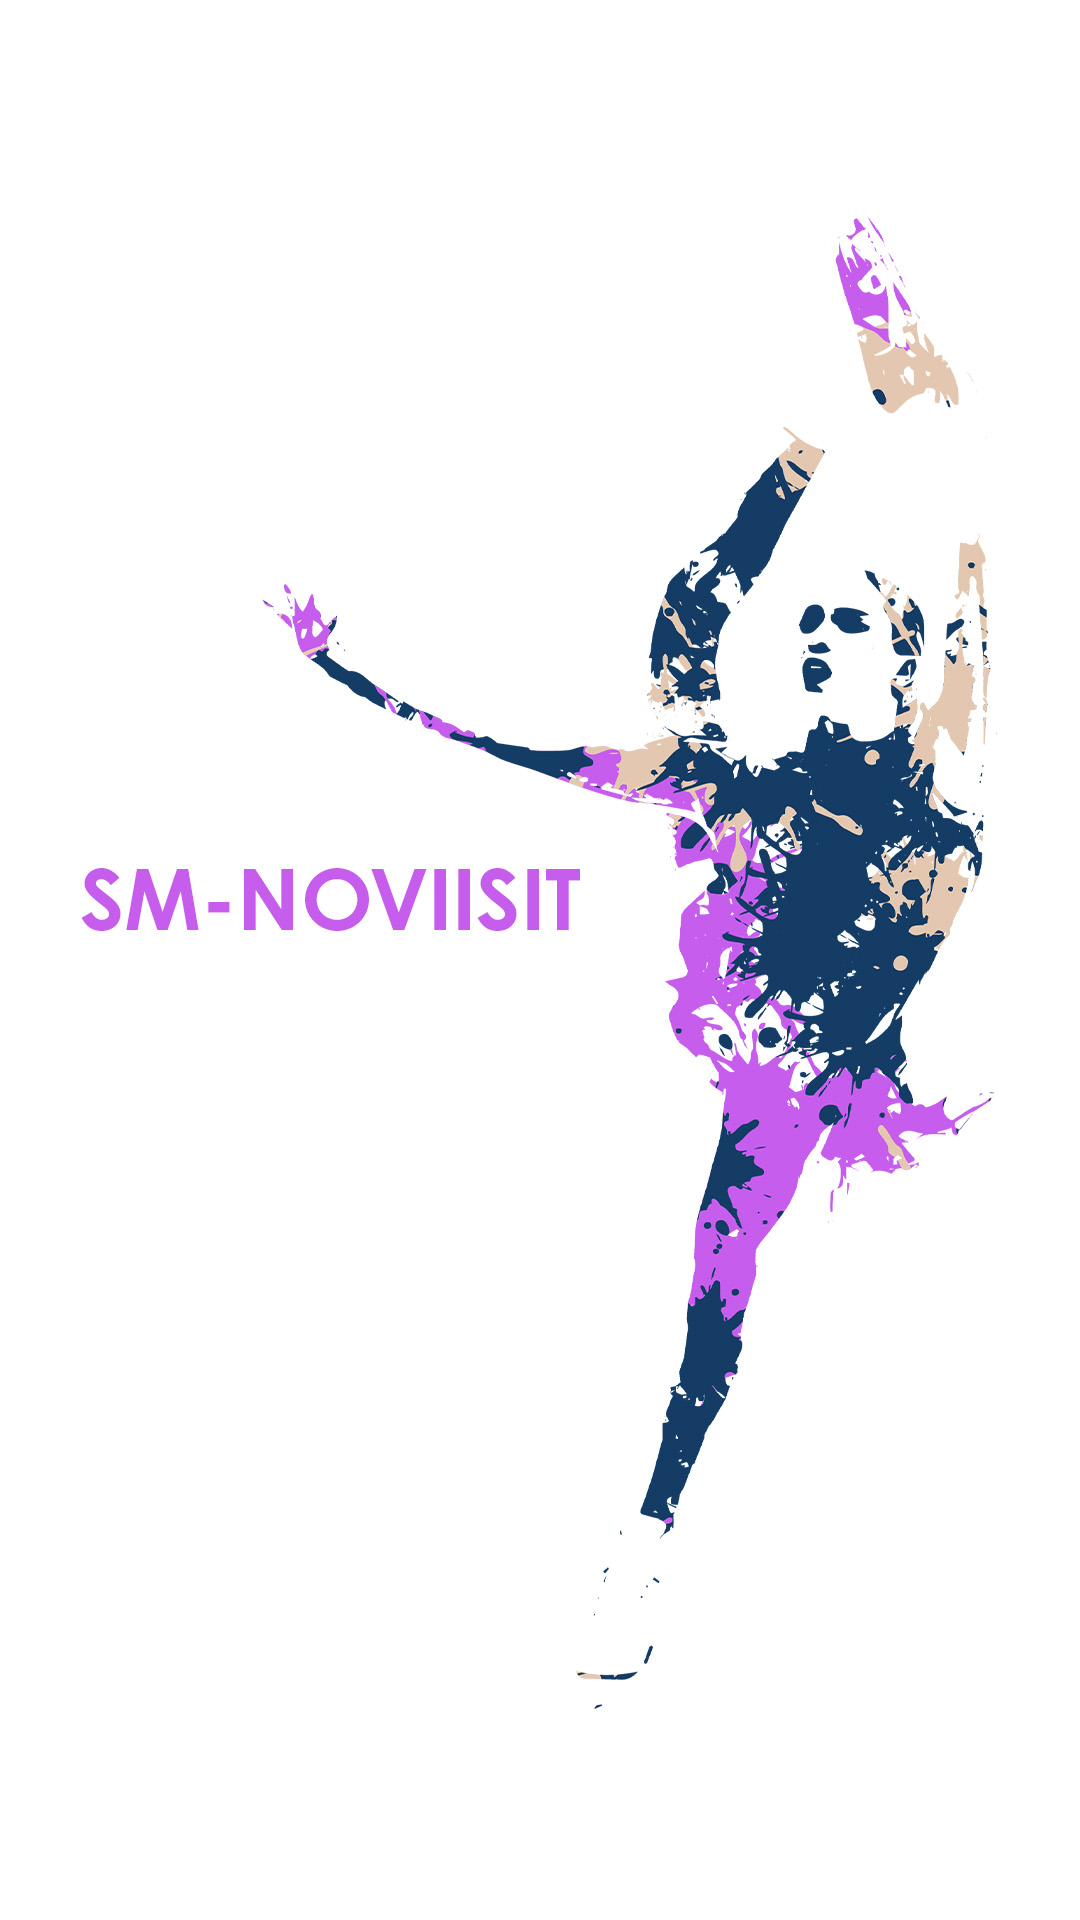 SM-Noviisit